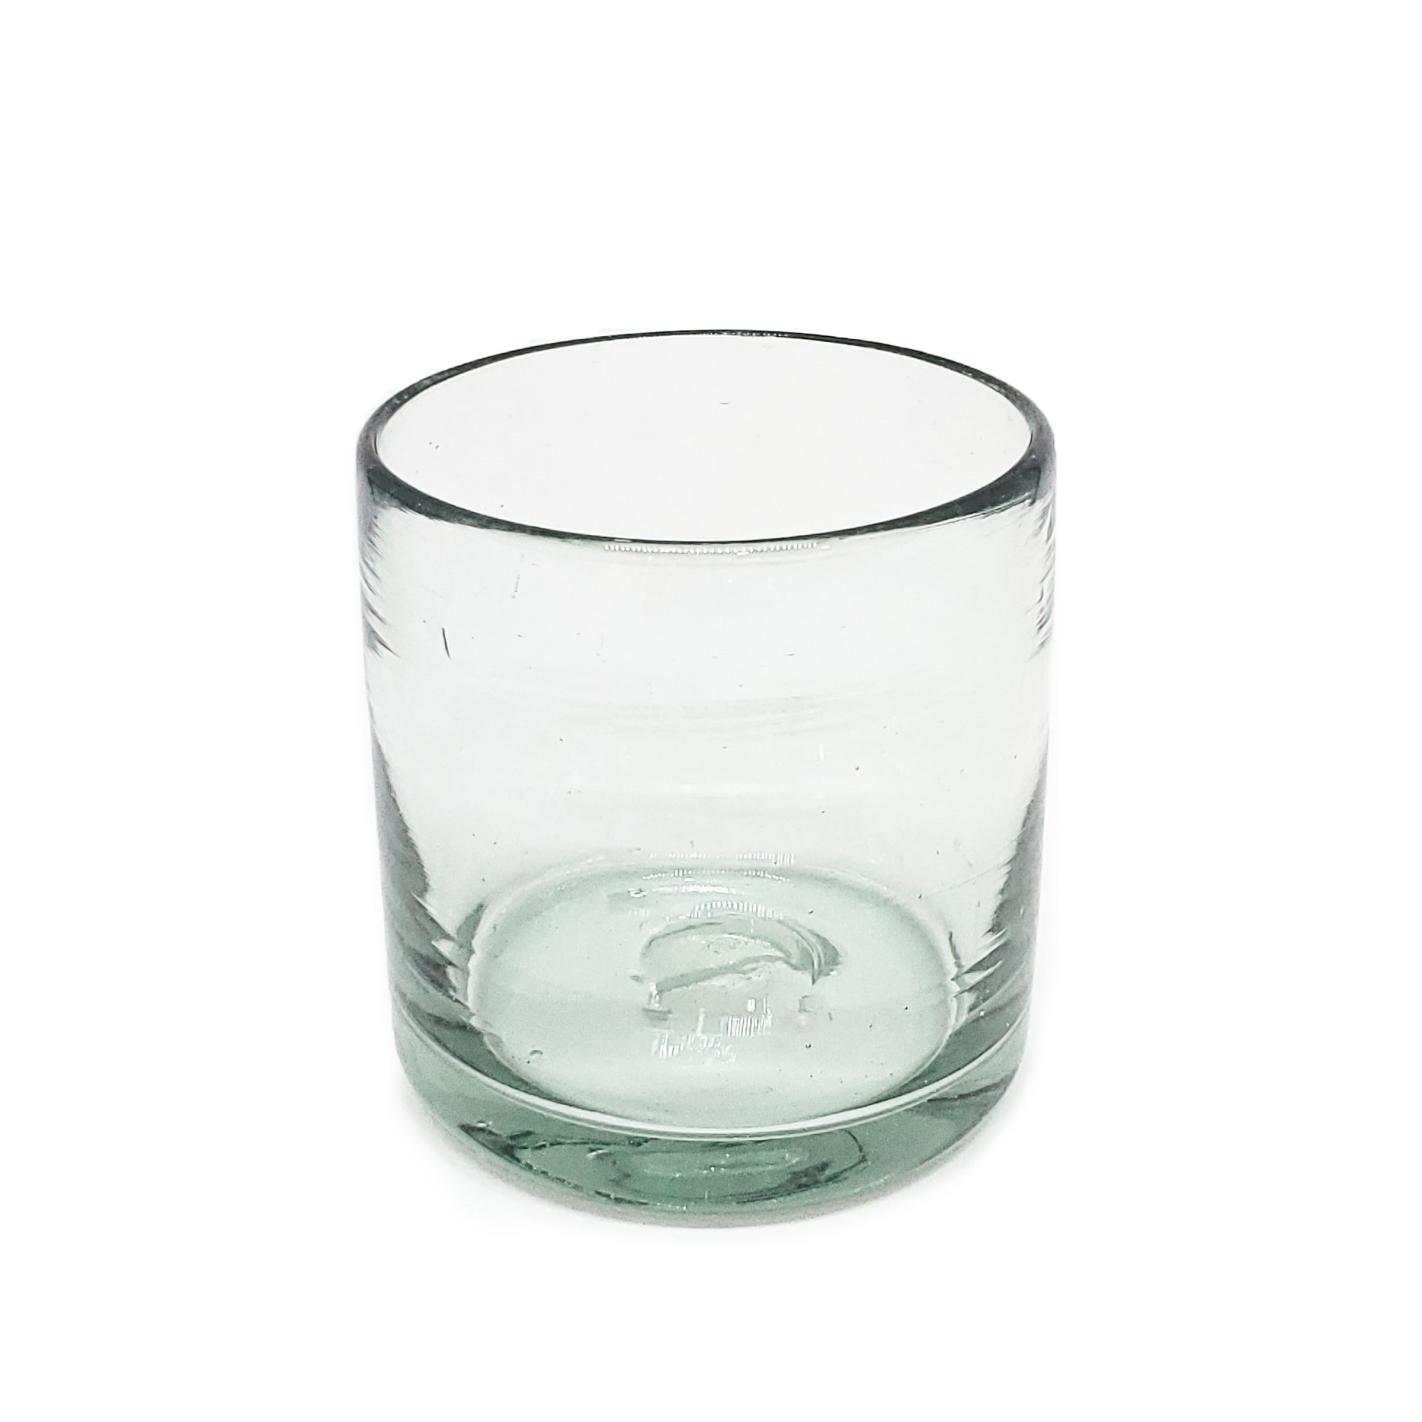 VIDRIO SOPLADO al Mayoreo / vasos DOF 8oz Transparentes / stos artesanales vasos le darn un toque clsico a su bebida favorita.